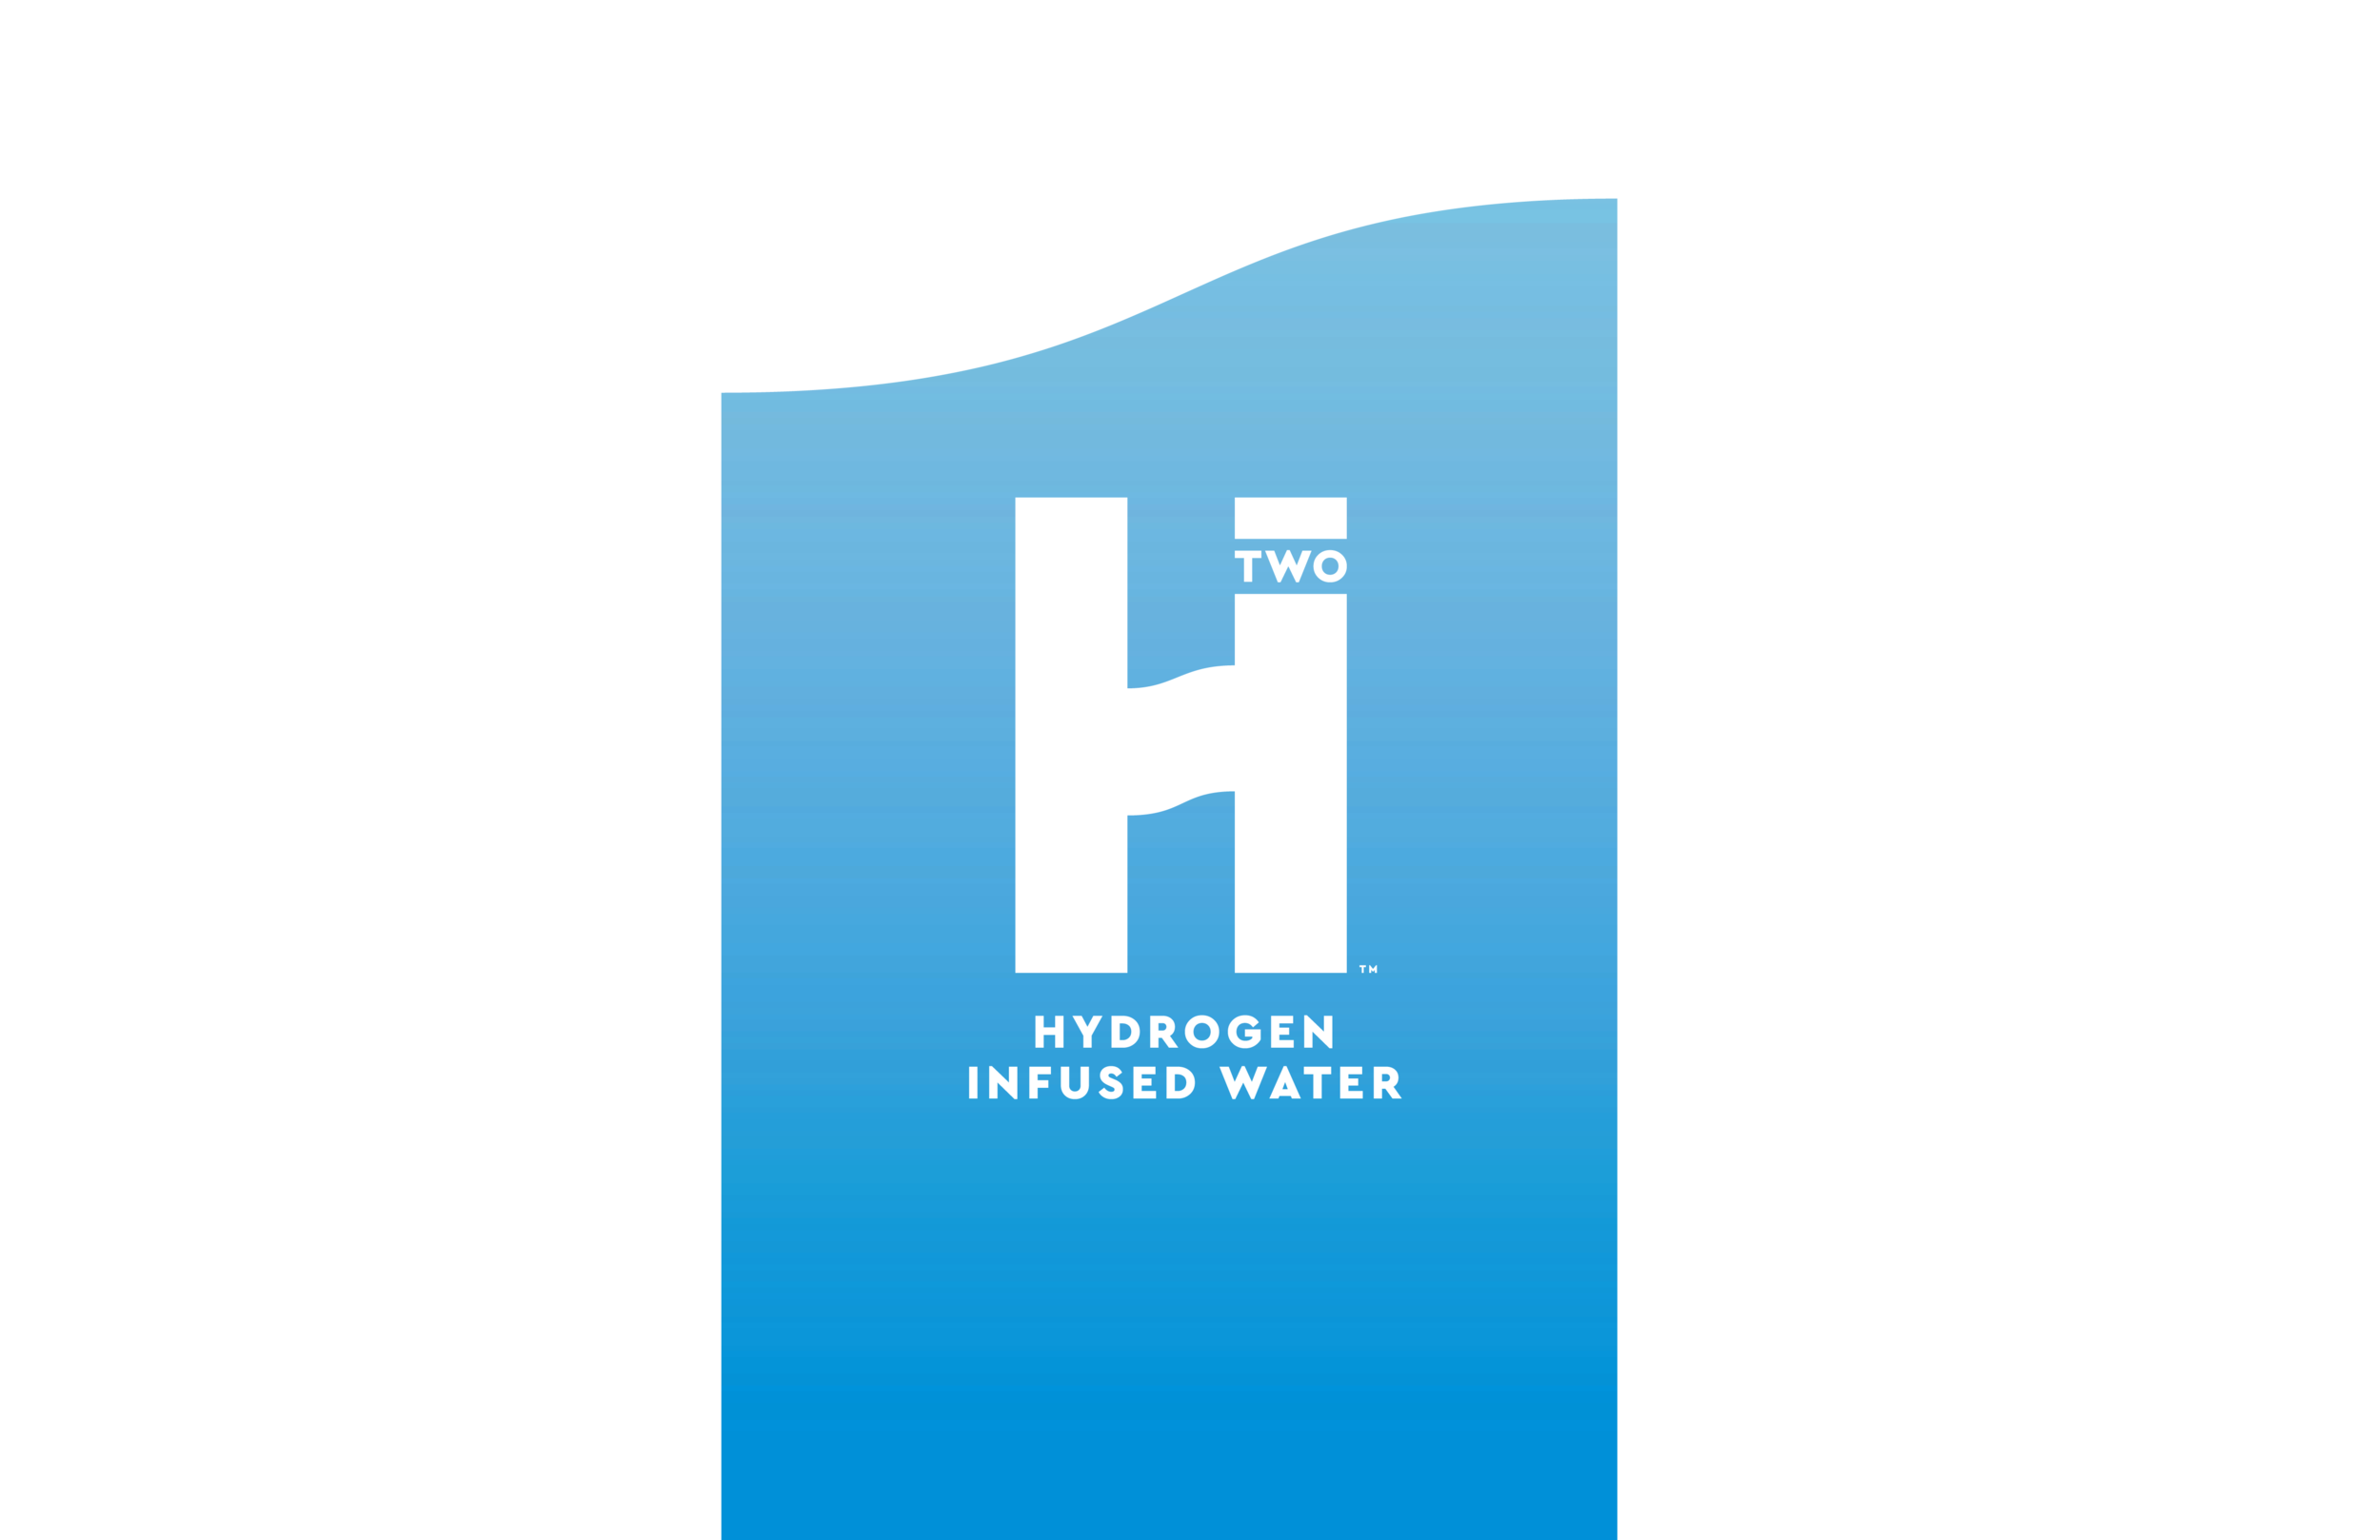 HFACTOR Hydrogen Water – HFactor Hydrogen Water